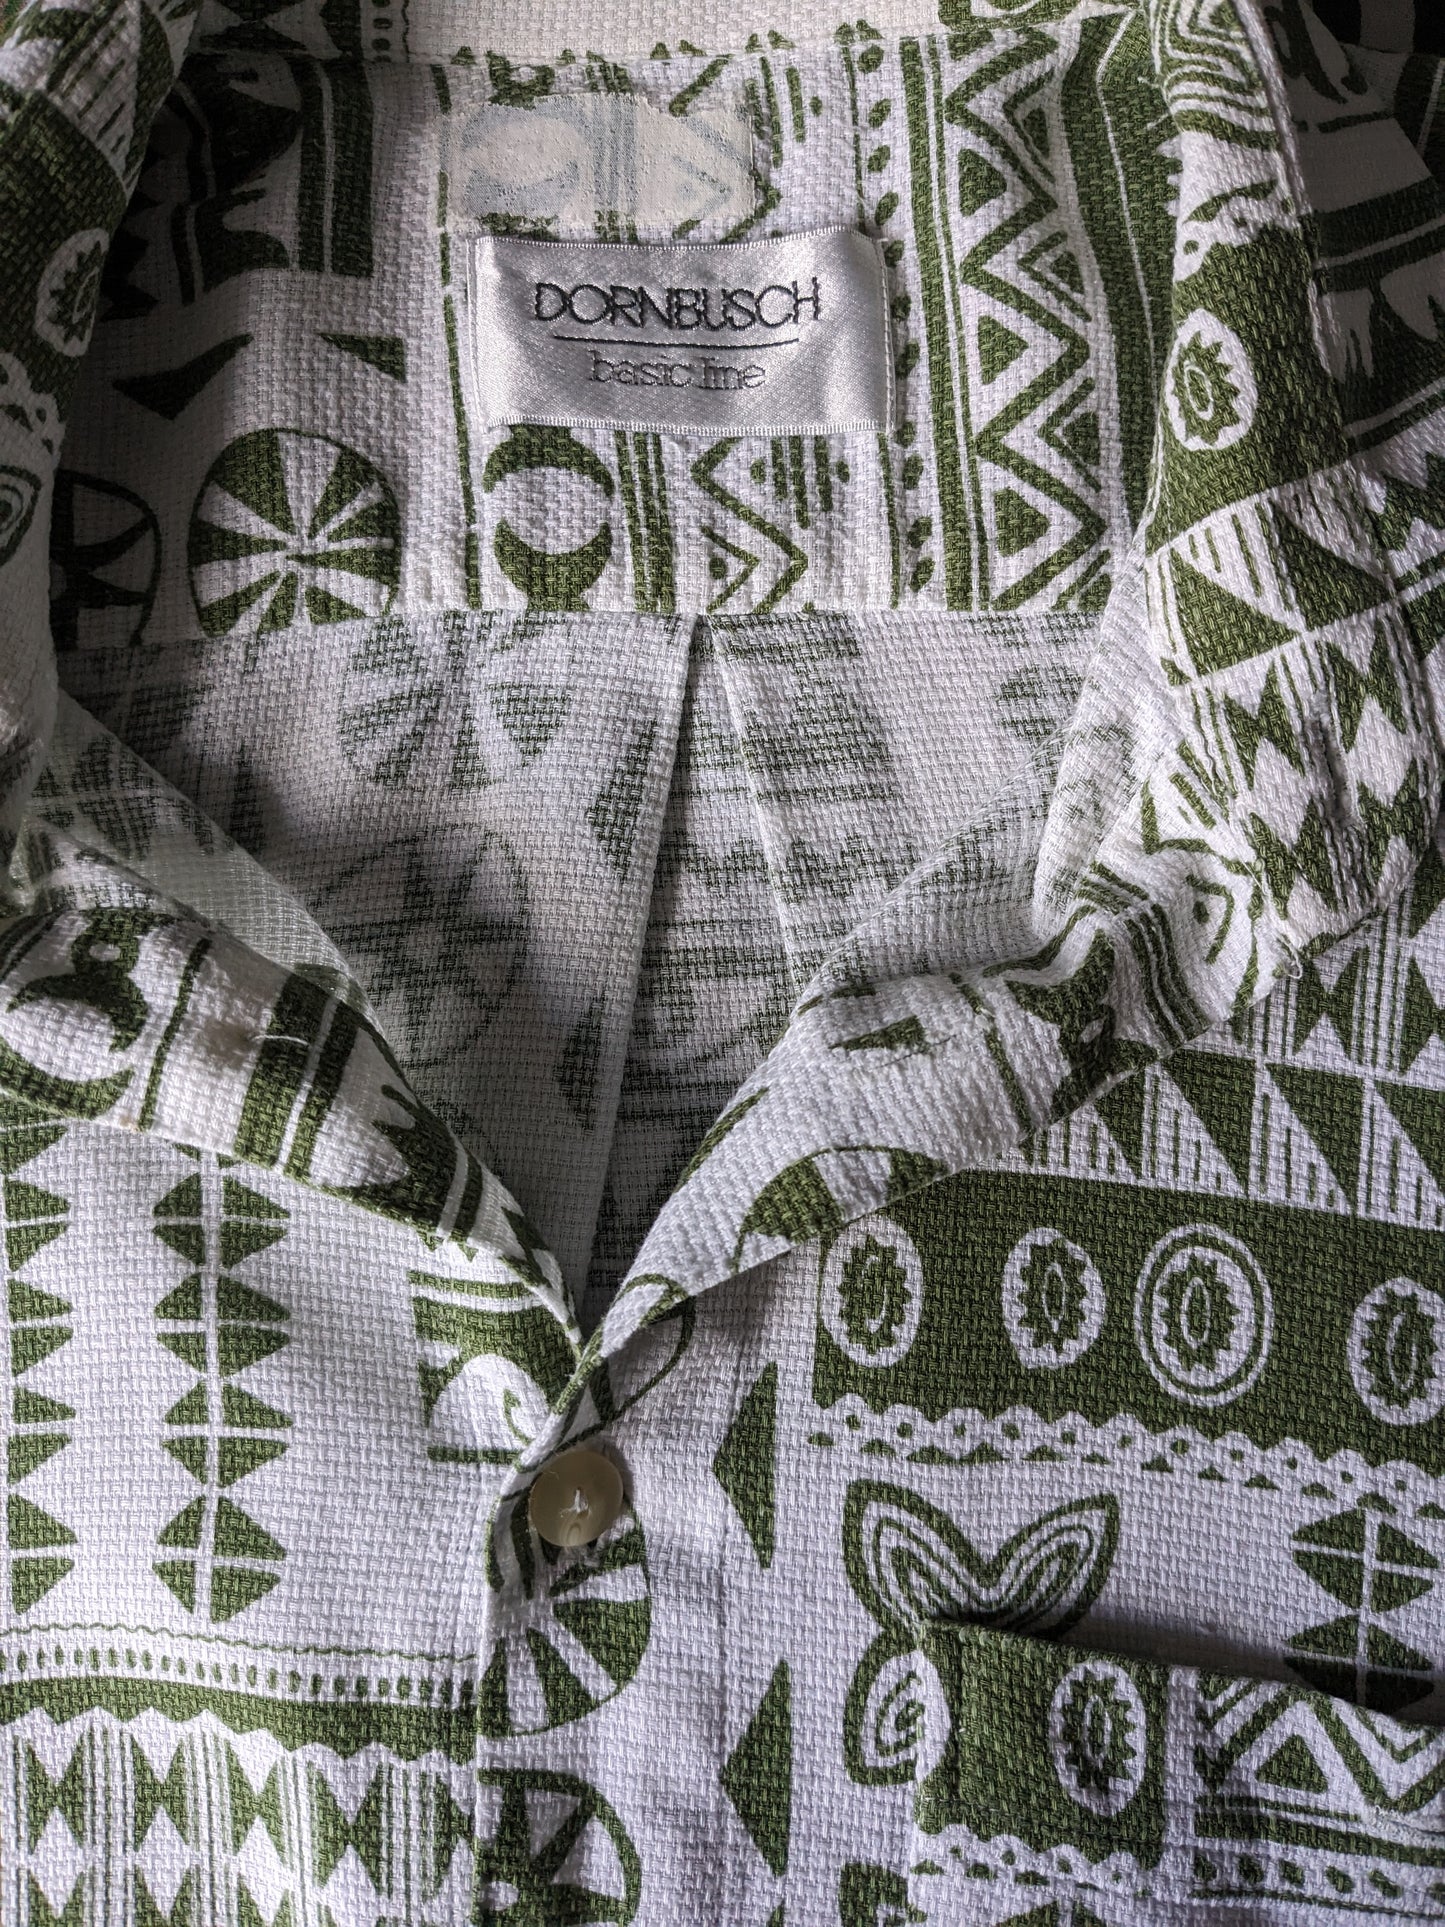 Camisa Vintage Dornbusch manga corta. Estampado blanco verde. Tamaño xl.